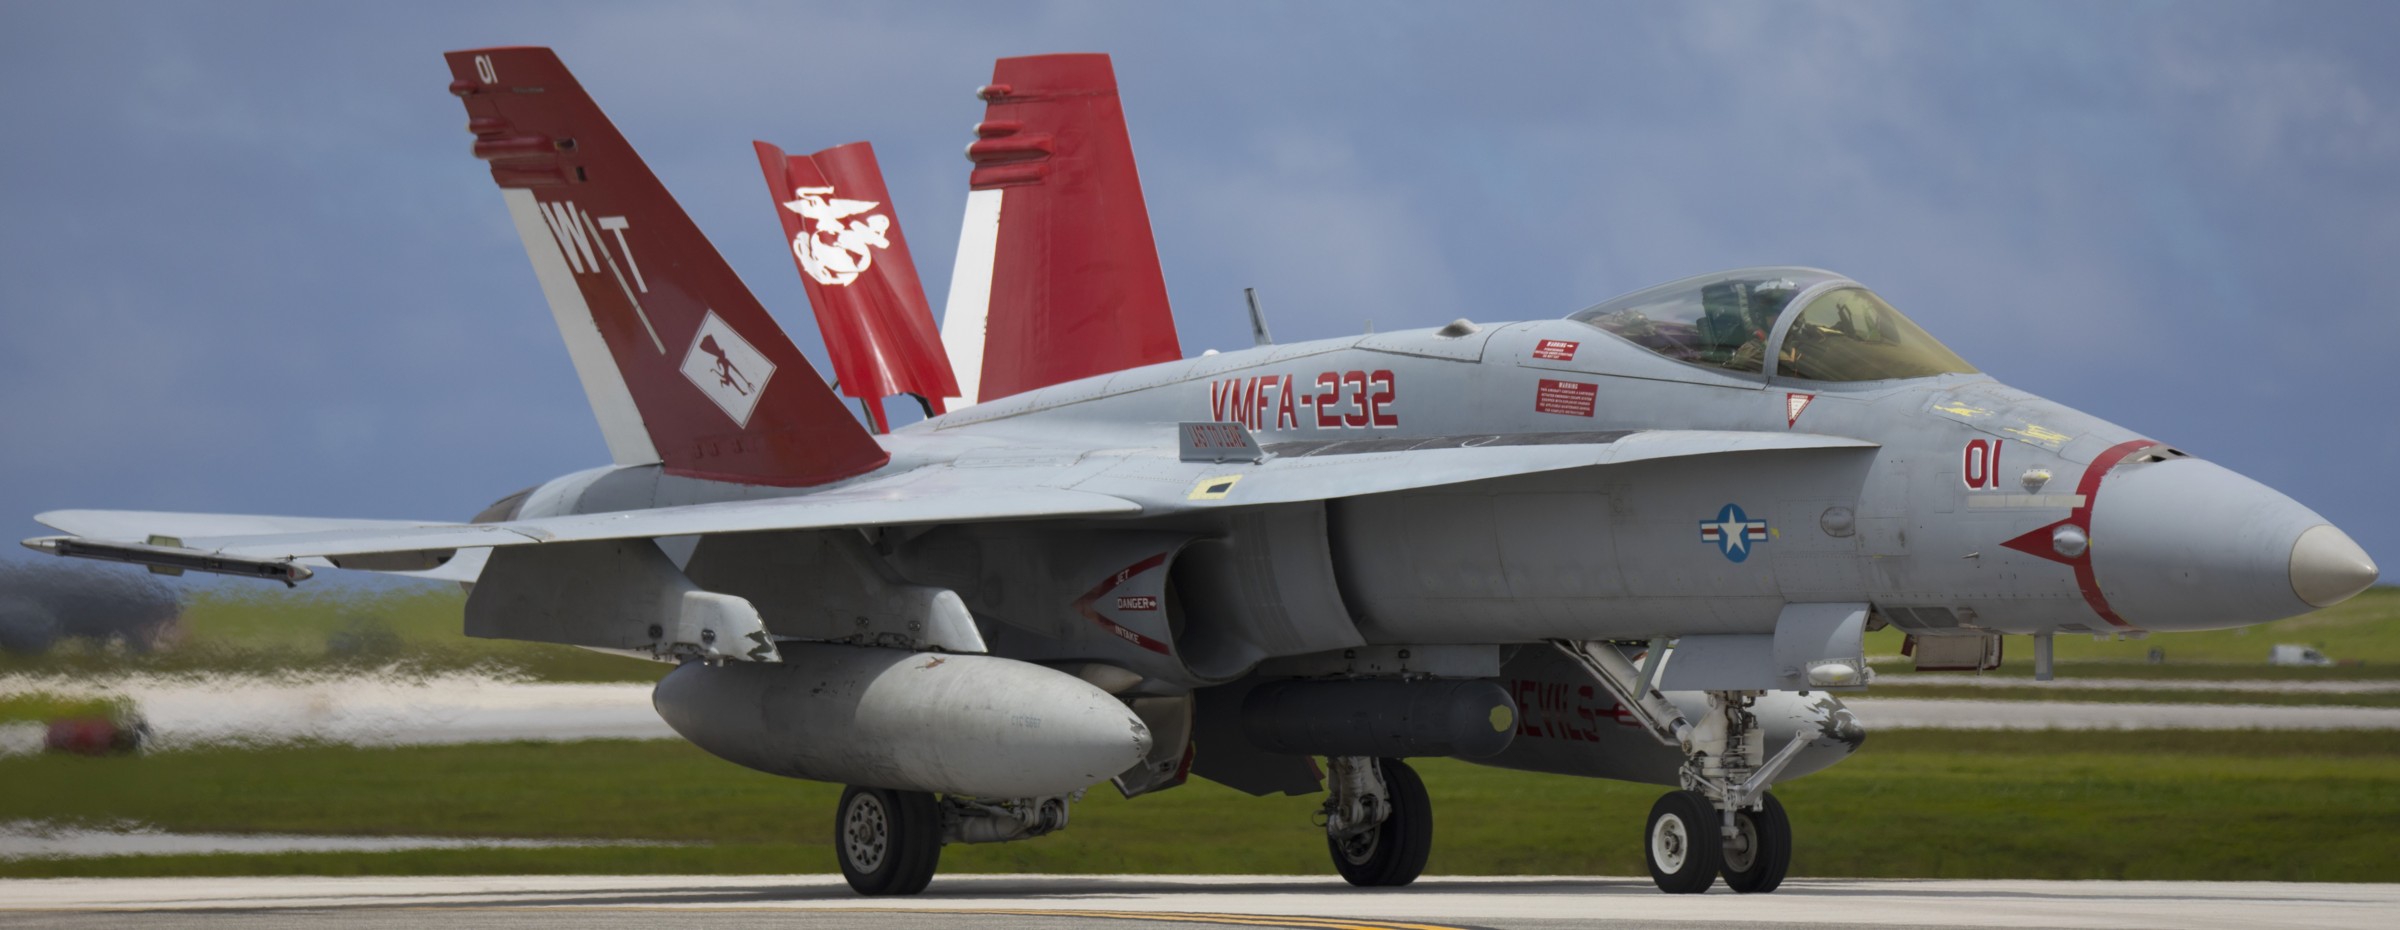 vmfa-232 red devils marine fighter attack squadron usmc f/a-18c hornet 222